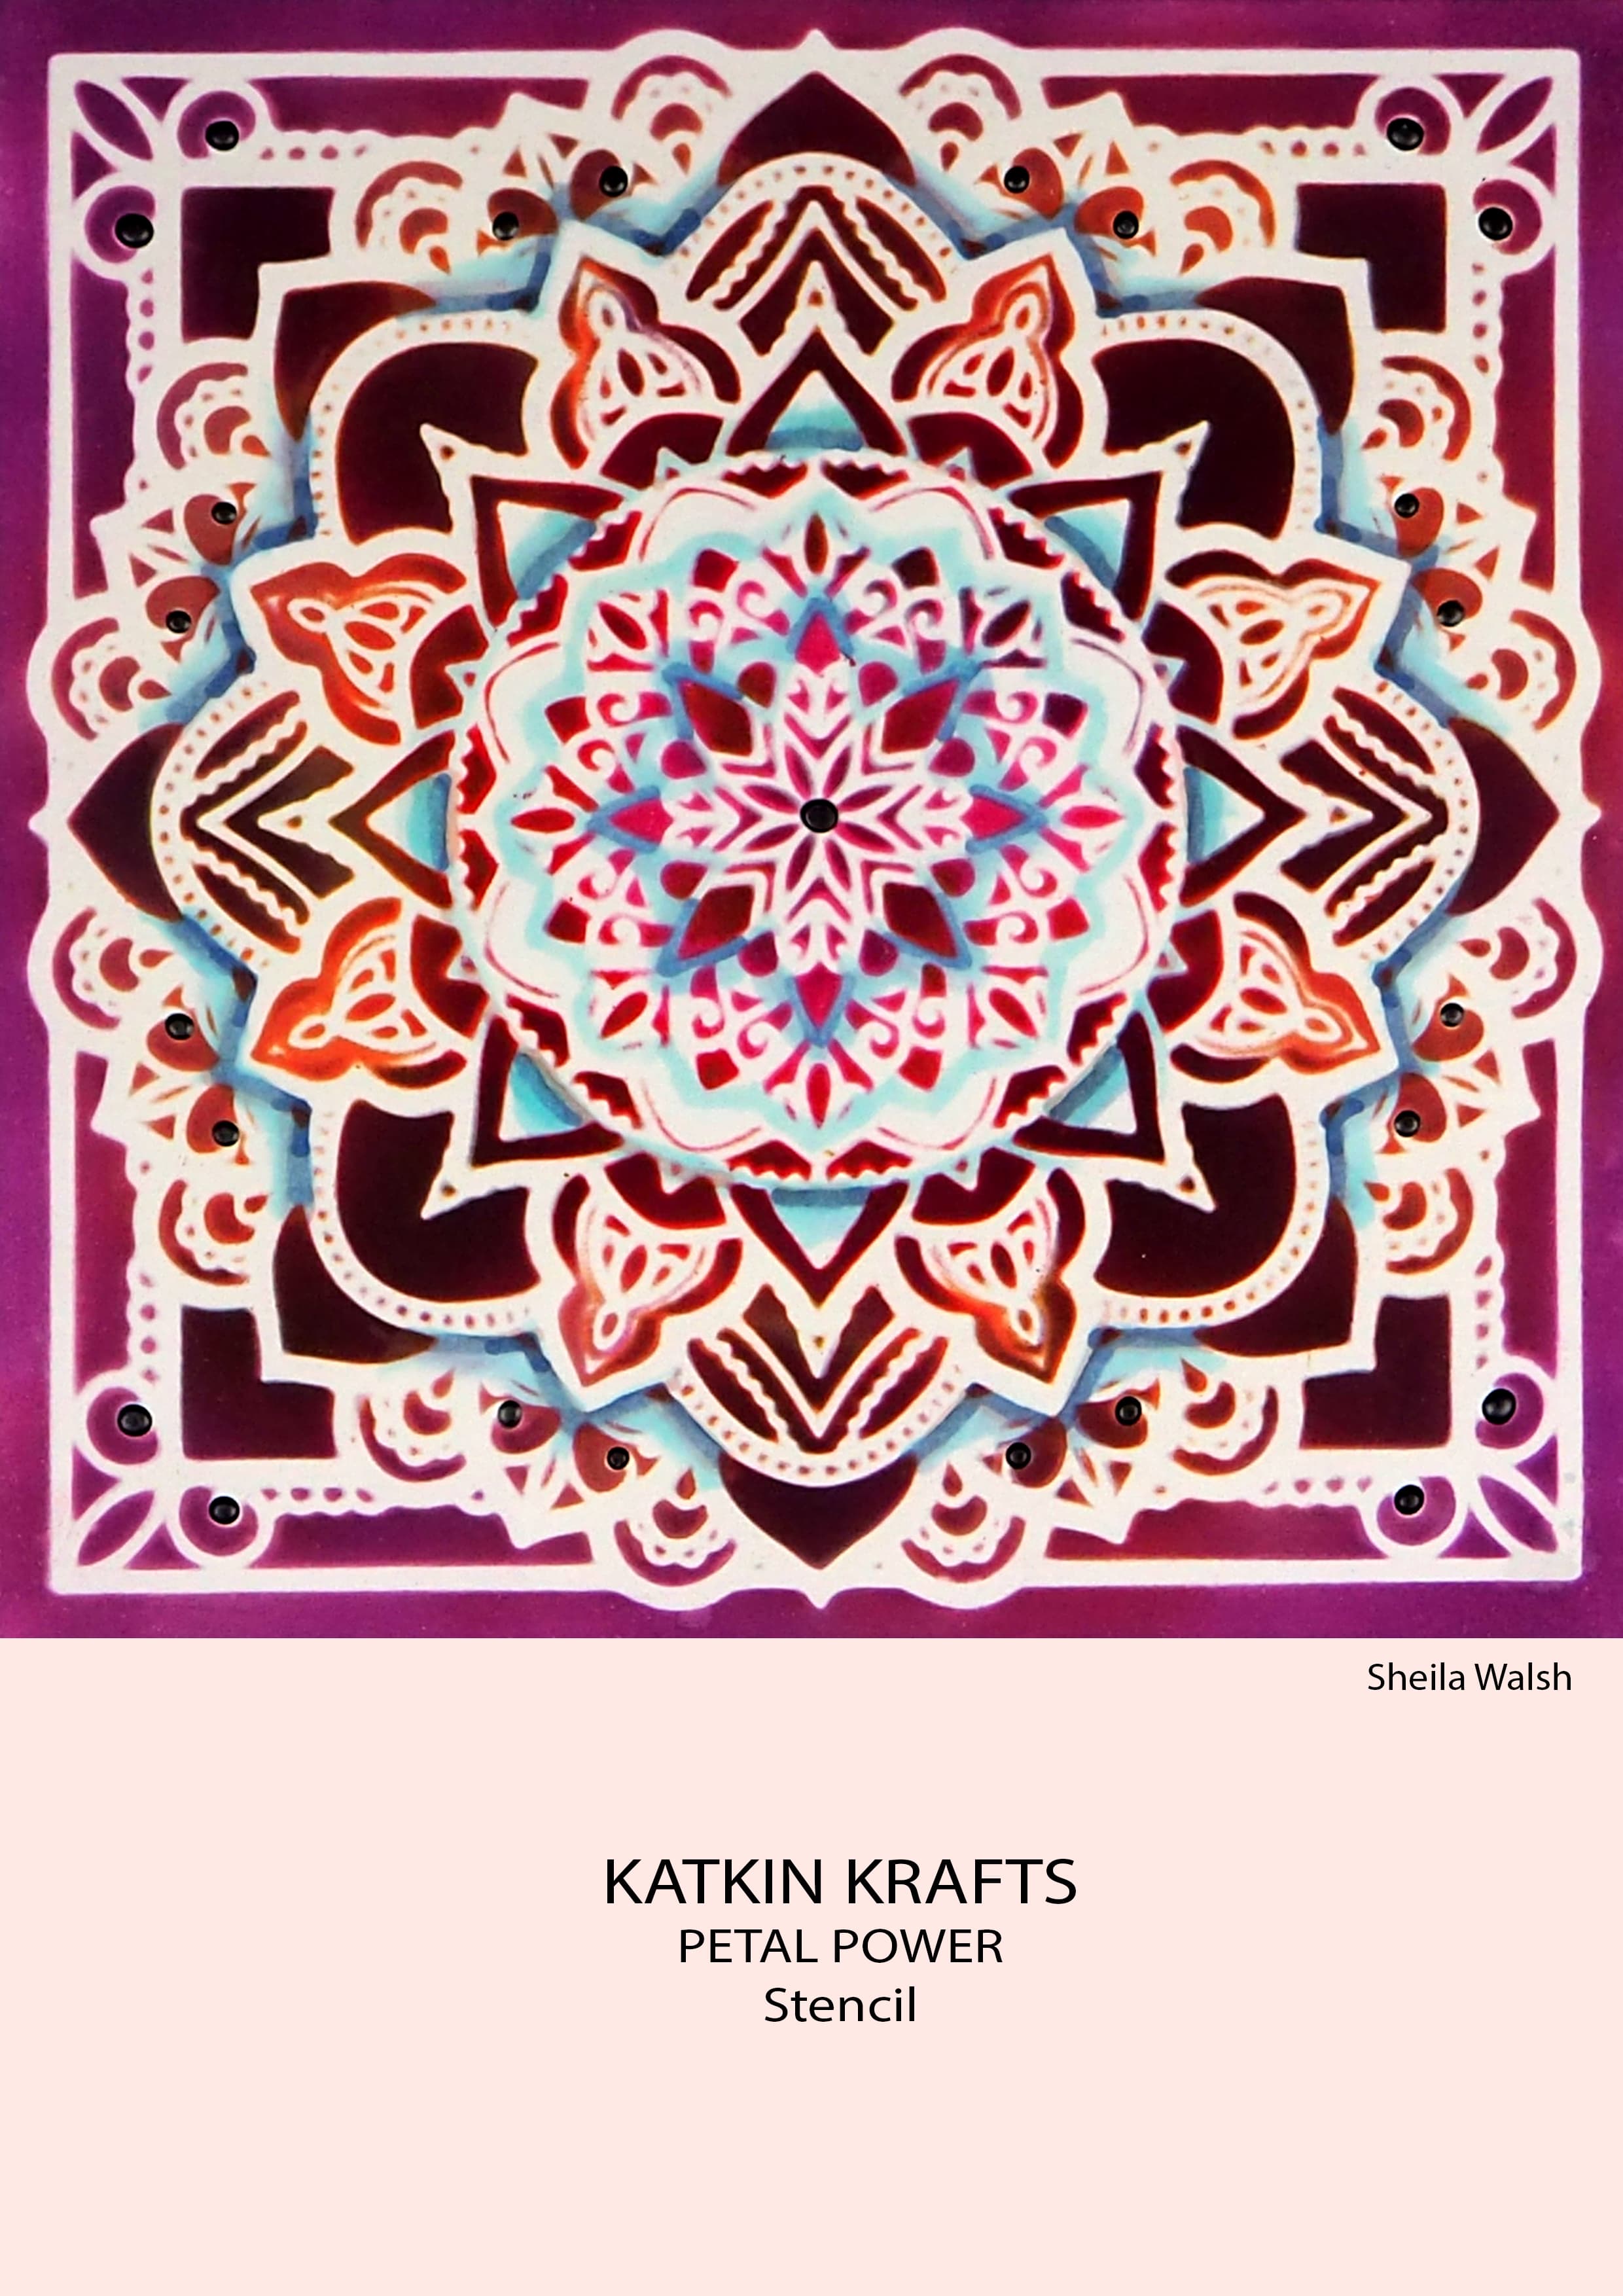 Katkin Krafts Petal Power 7 in x 7 in Stencil